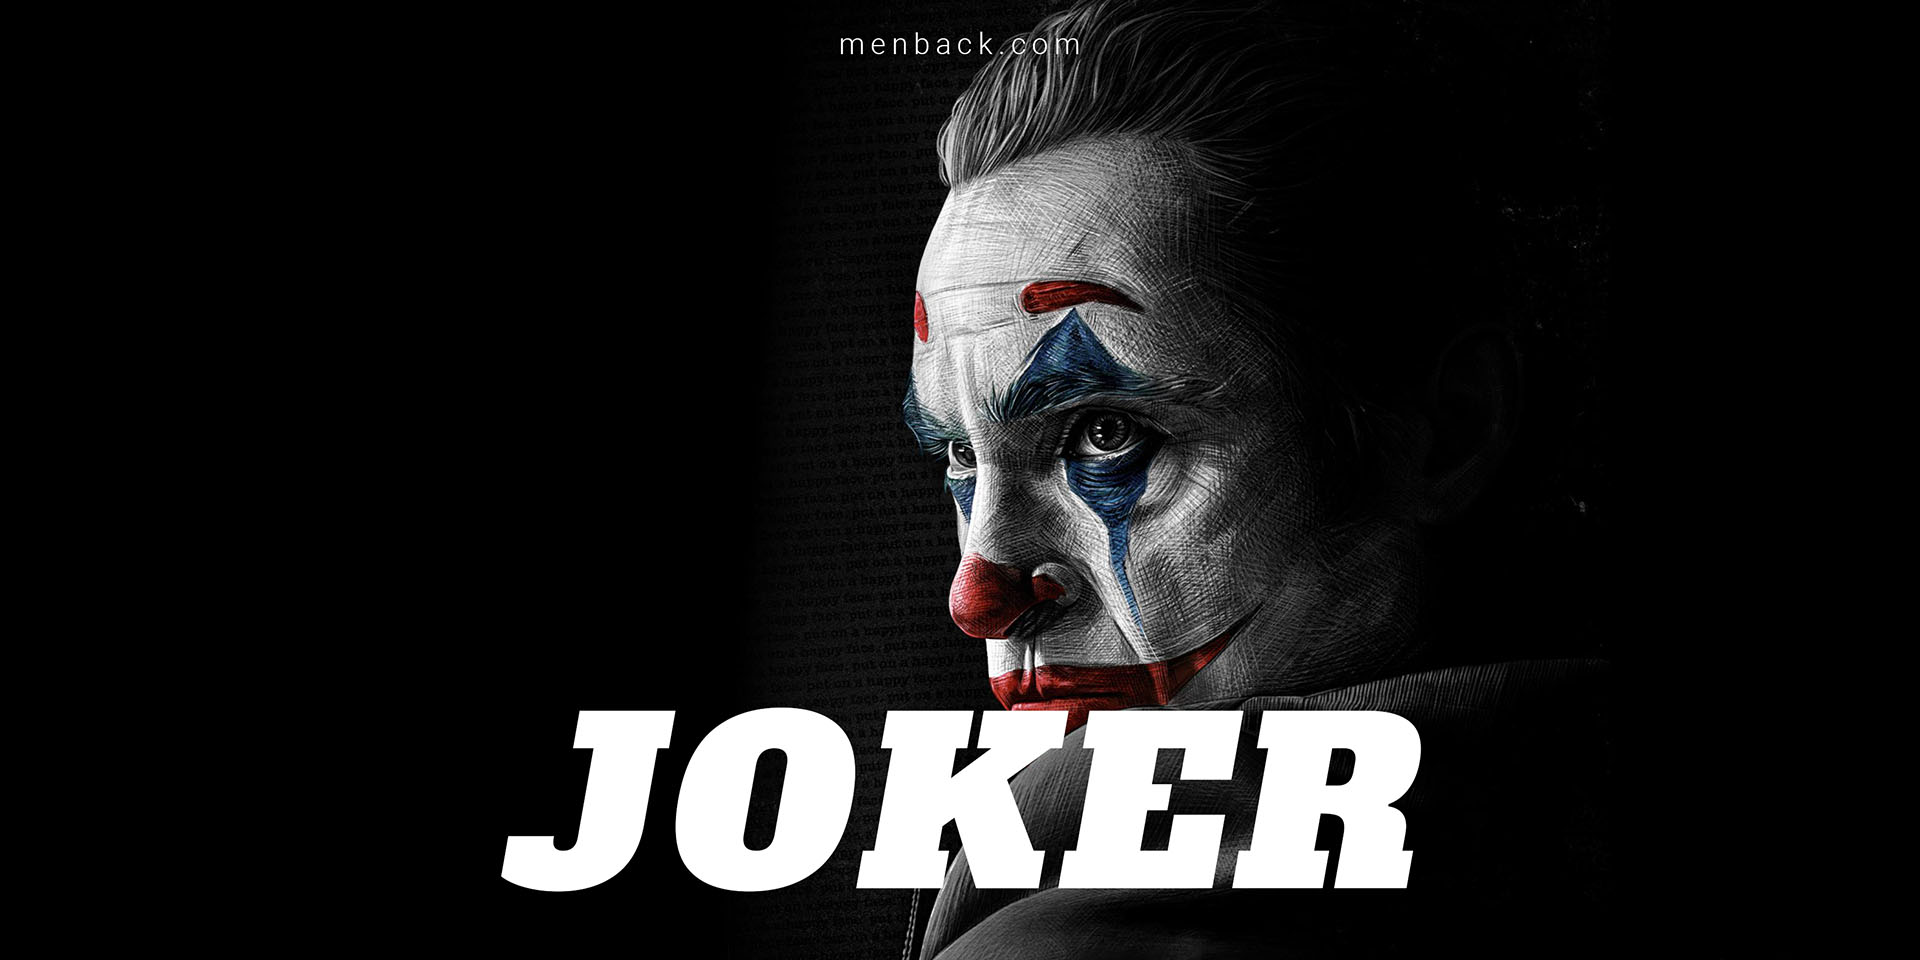 Những Câu Nói Hay Nhất Của Joker Khiến Bạn Thức Tỉnh